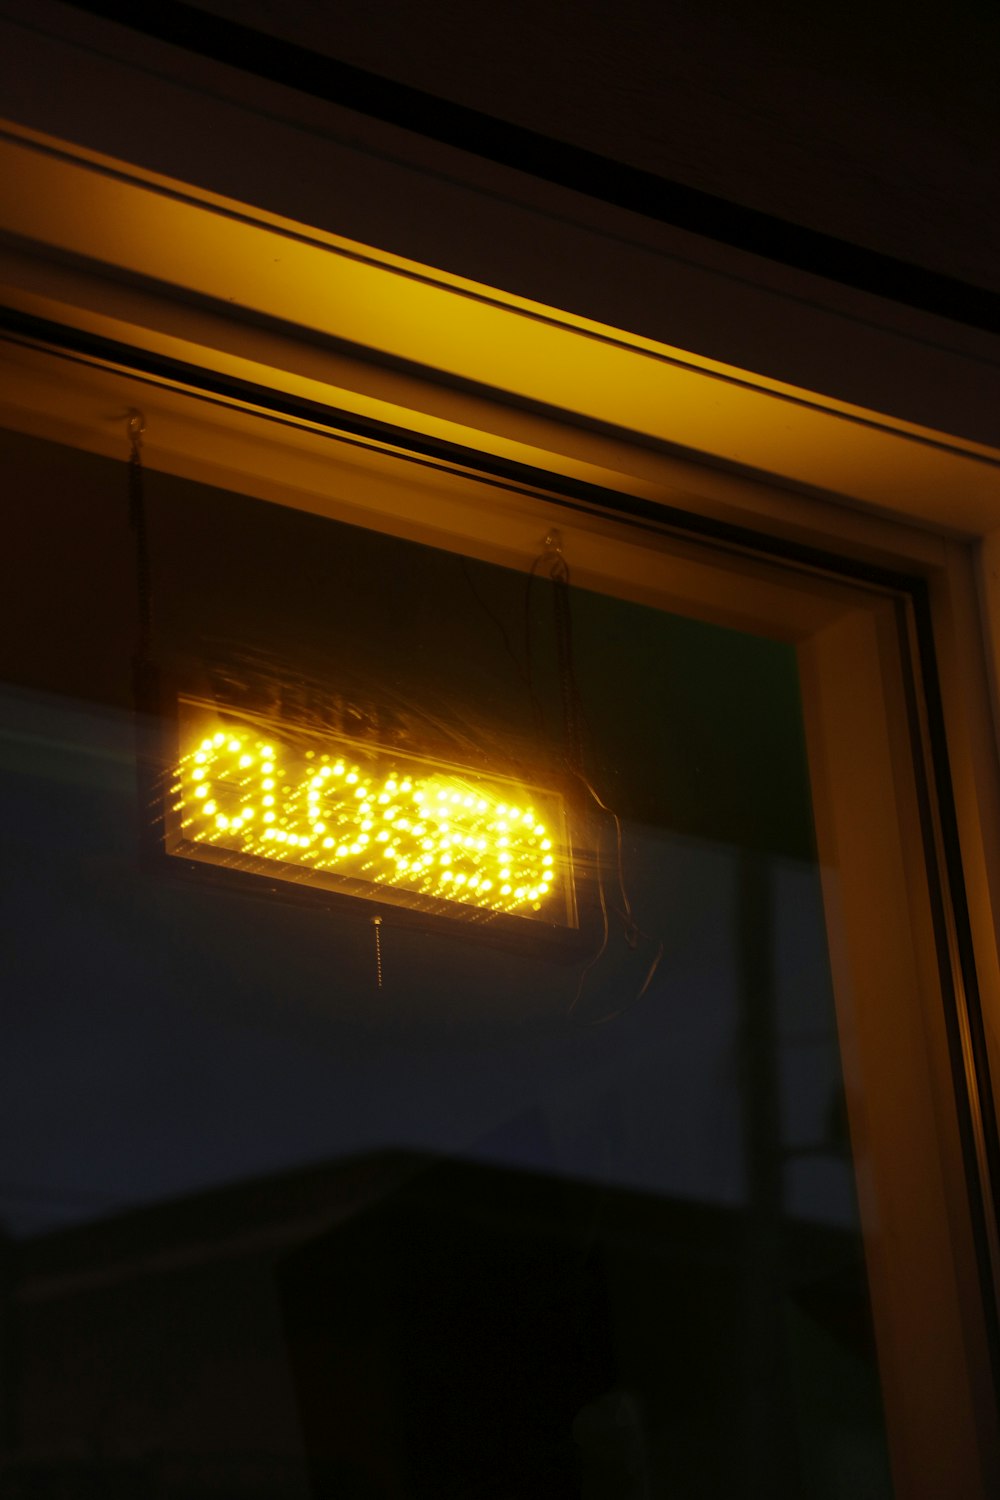 Eine Leuchtreklame mit der Aufschrift "geschlossen hängt an einem Fenster"